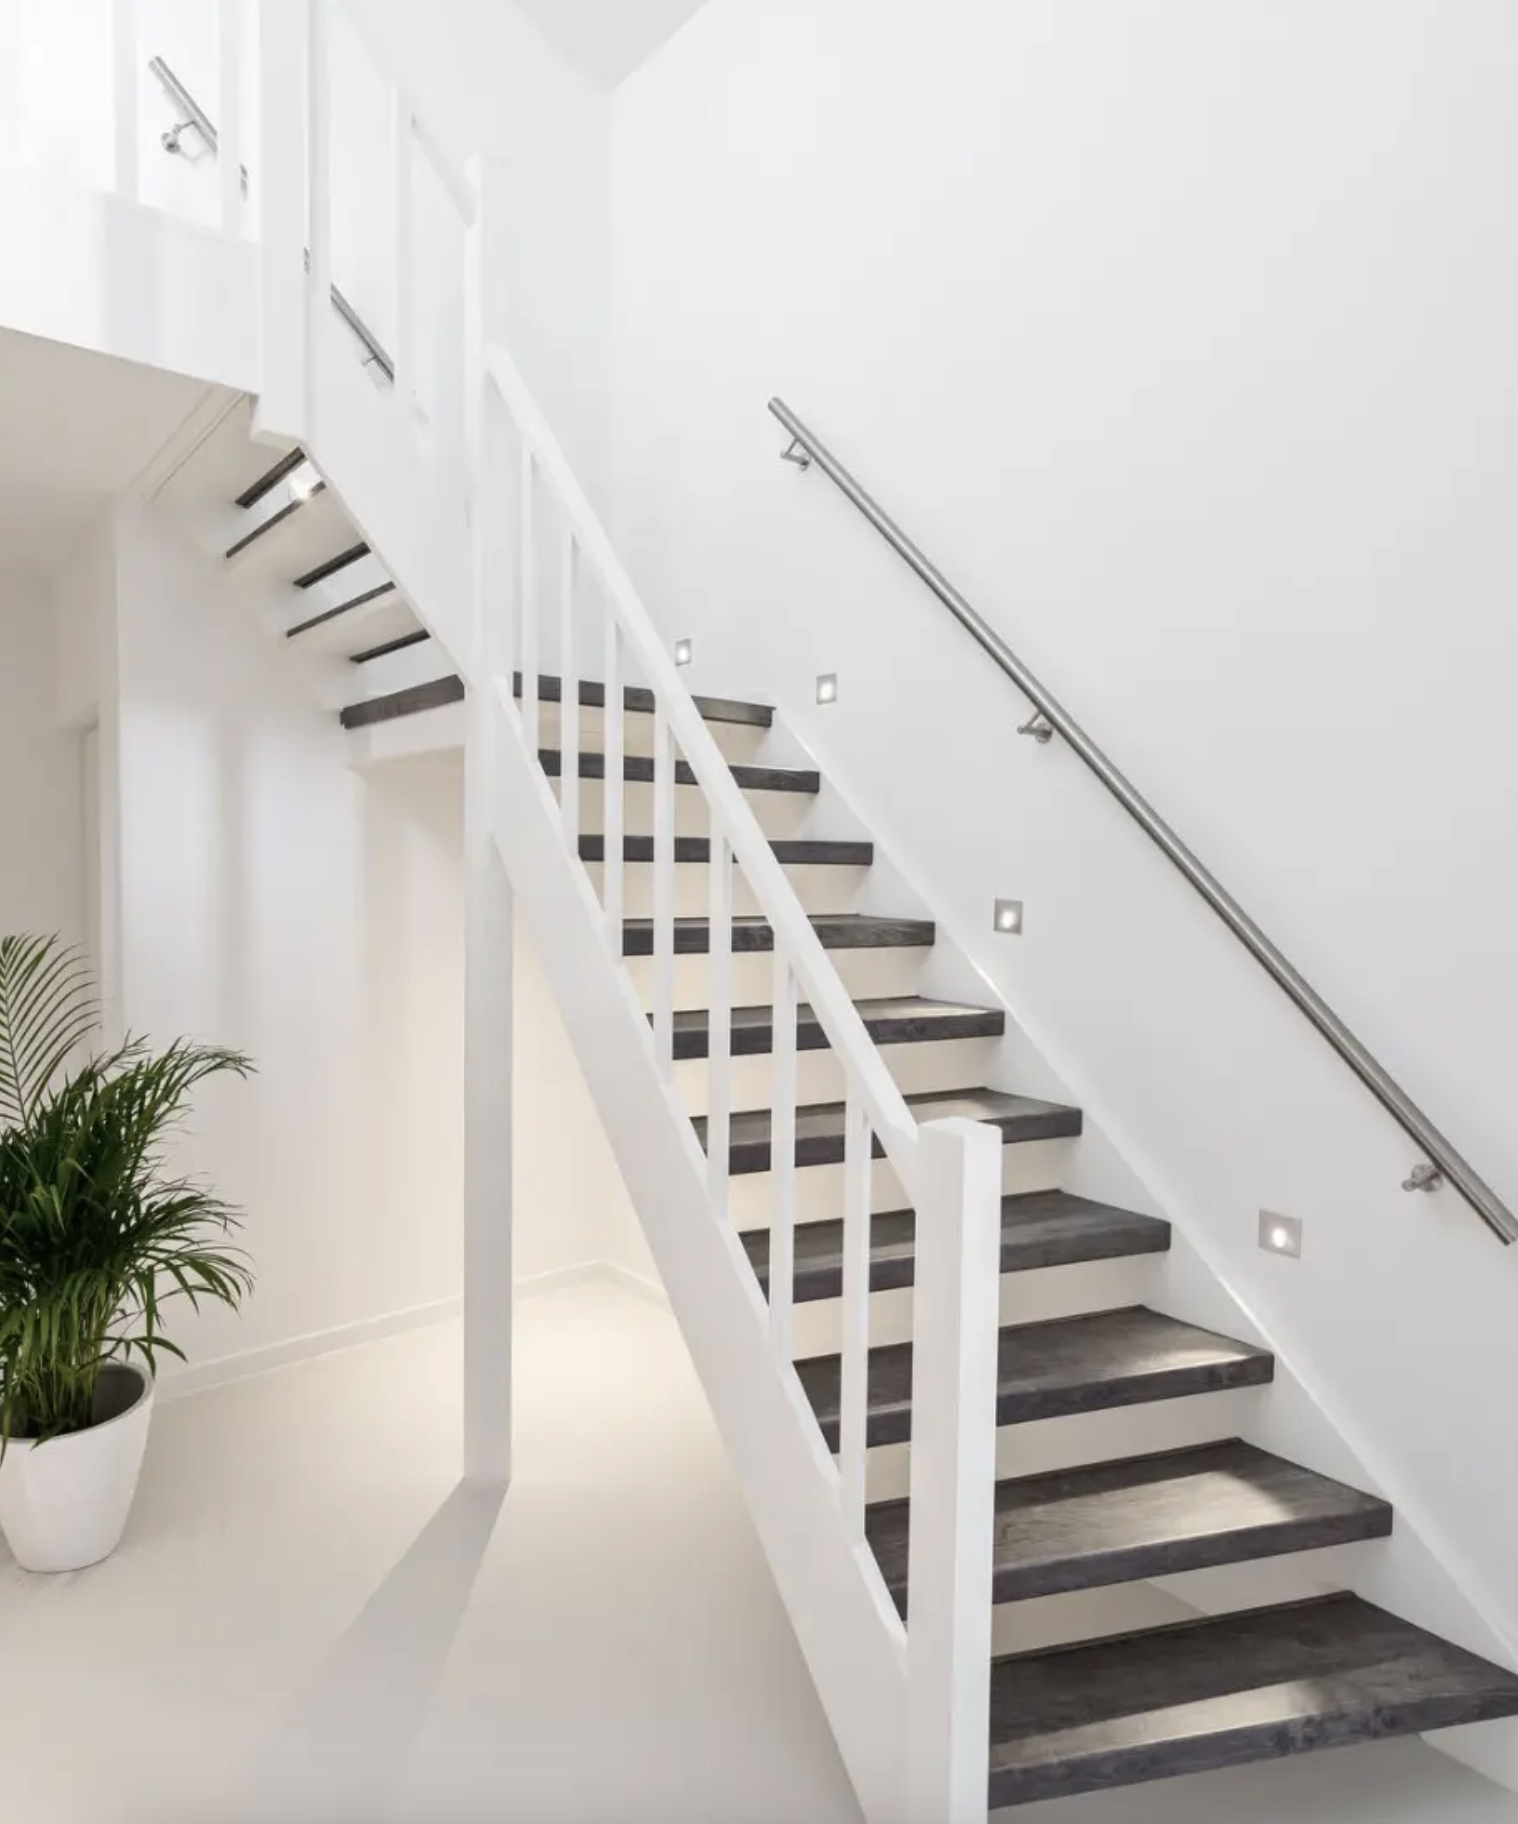 Zoek je tips & originele inspiratie voor je trap? We geven je een opstapje naar een stijlvolle en veilige trap.